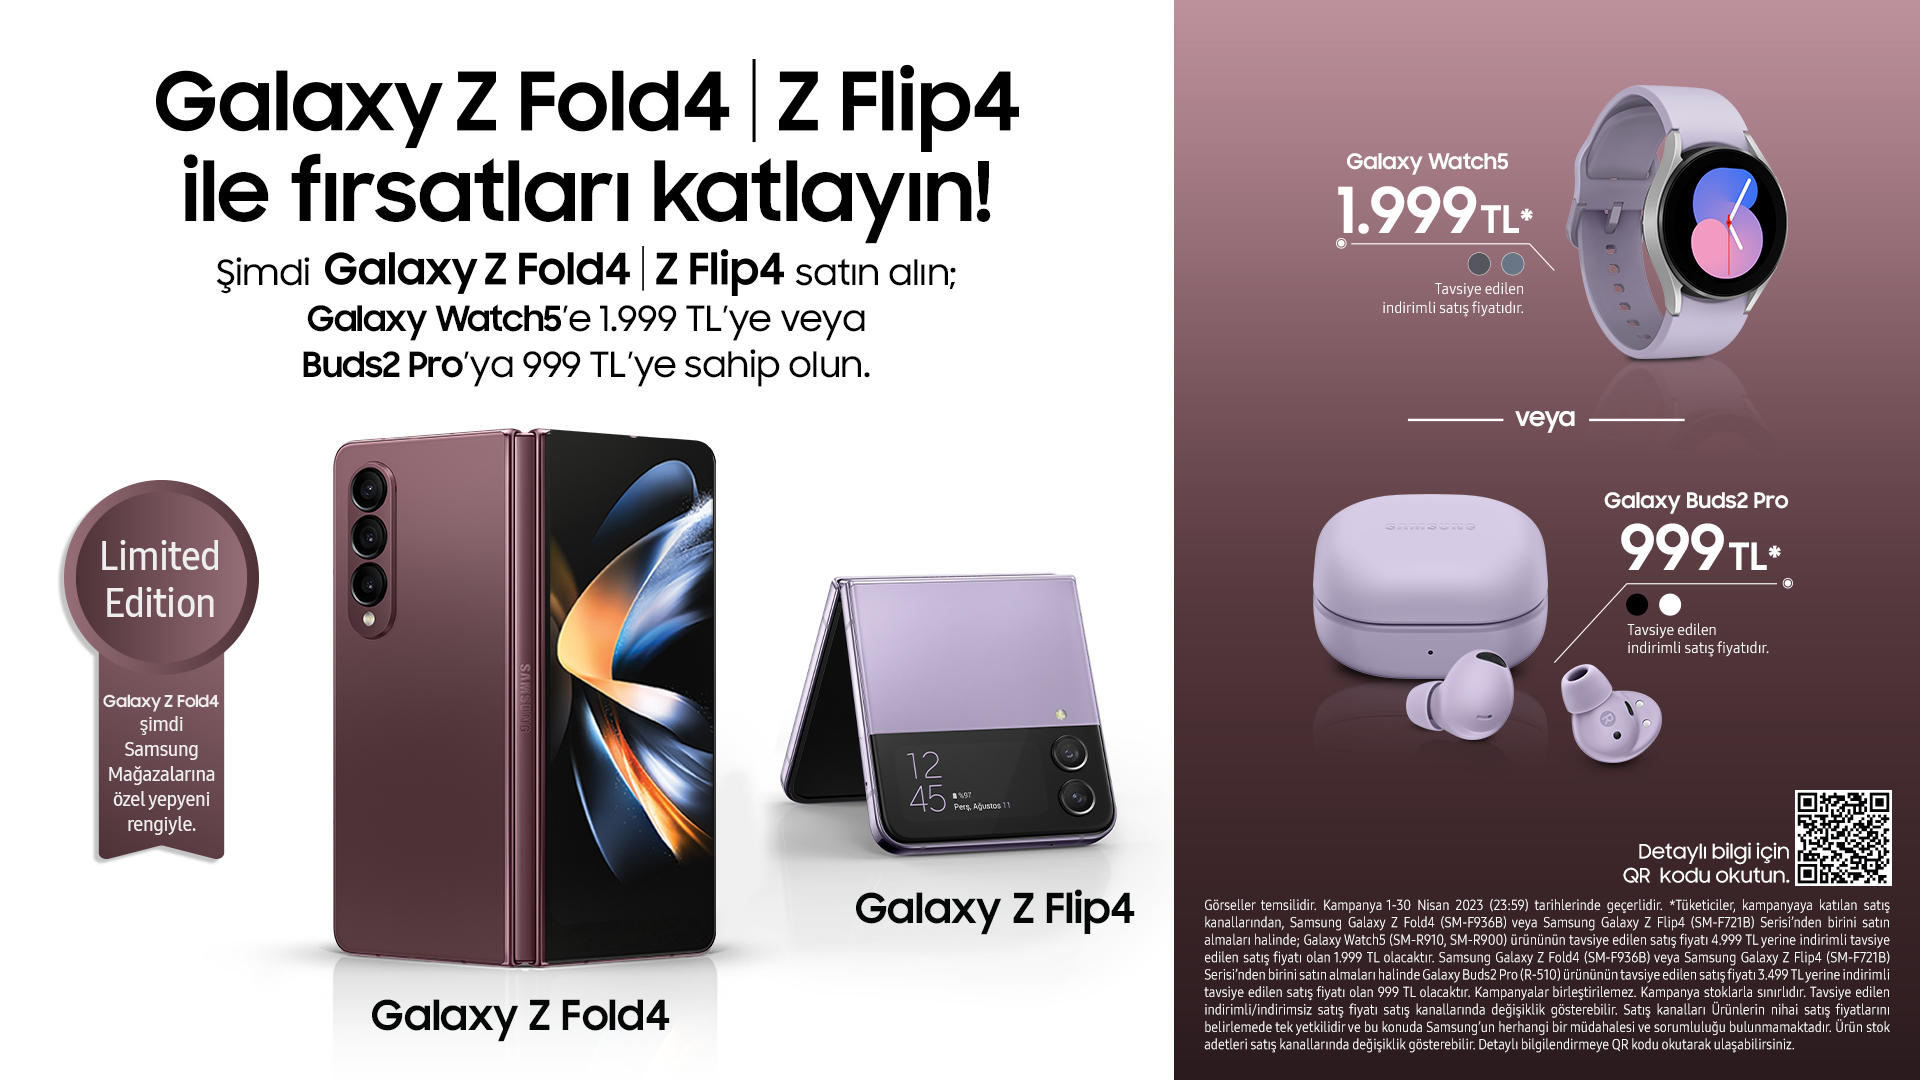 Üretkenlik ve yaratıcılığın zirvesi Galaxy Z Fold4, şimdi yeni ‘Burgundy’ renk seçeneğiyle satışta